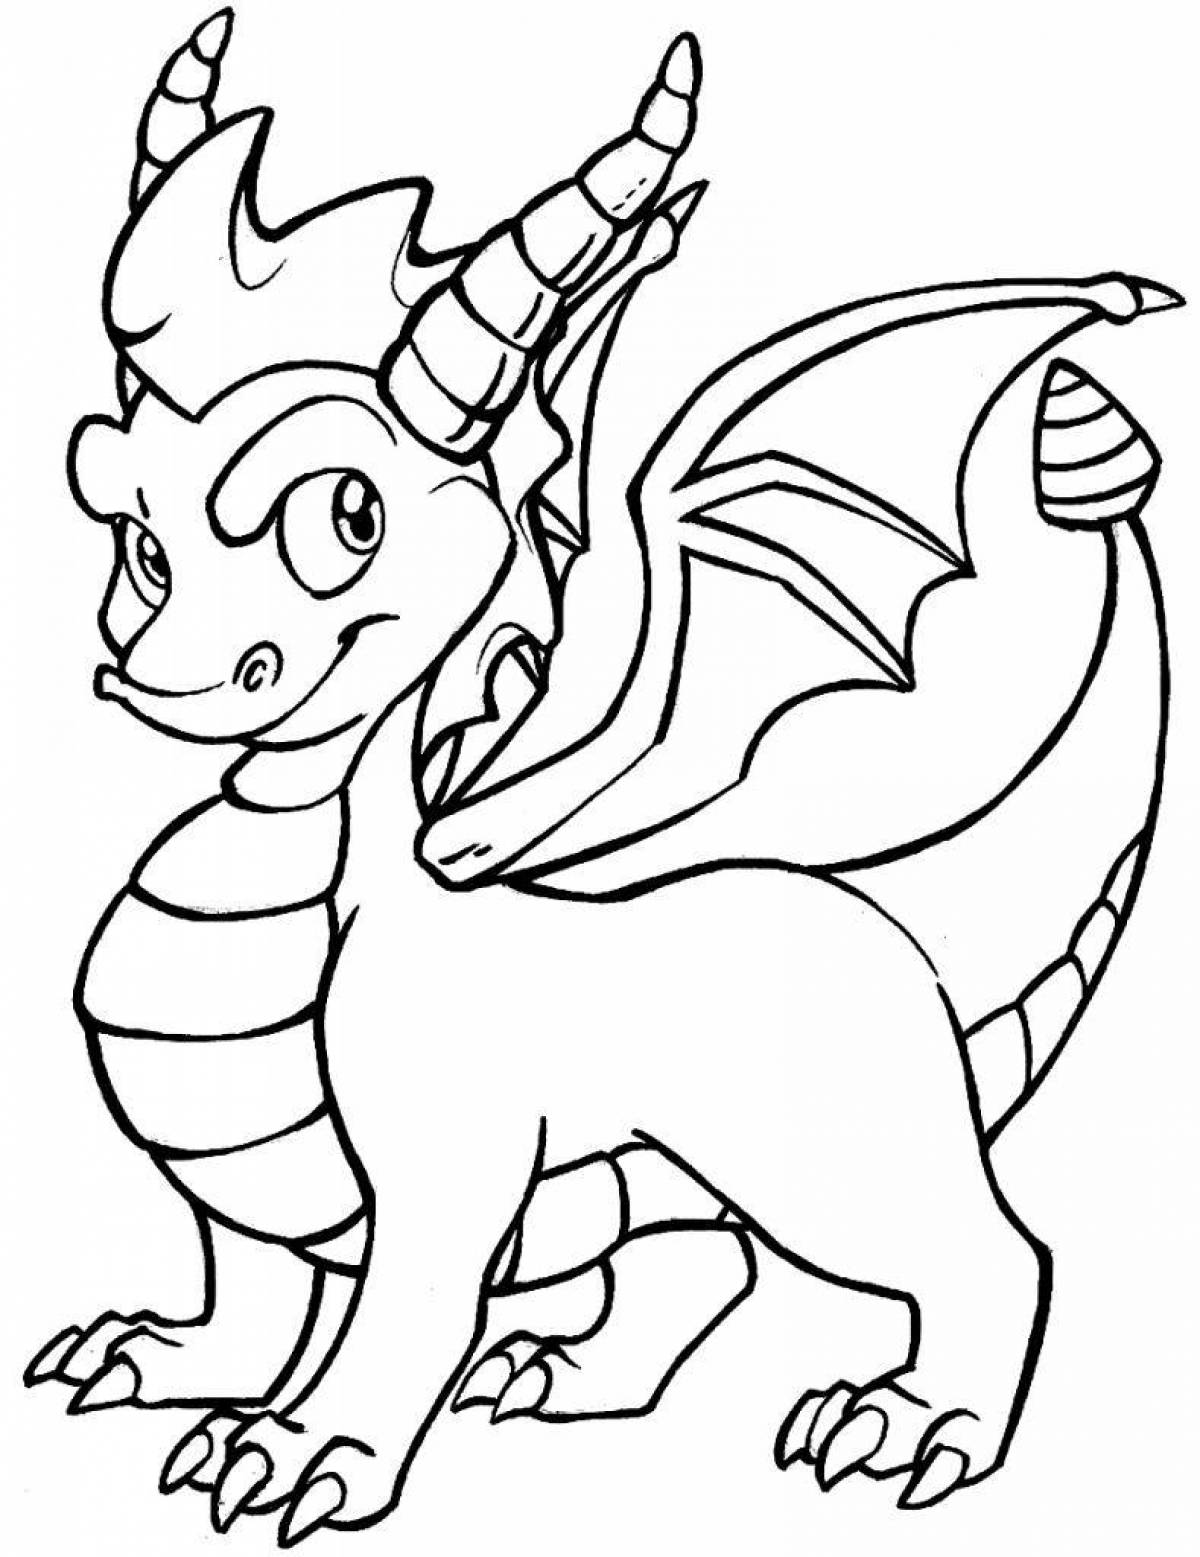 Dragon pattern #4